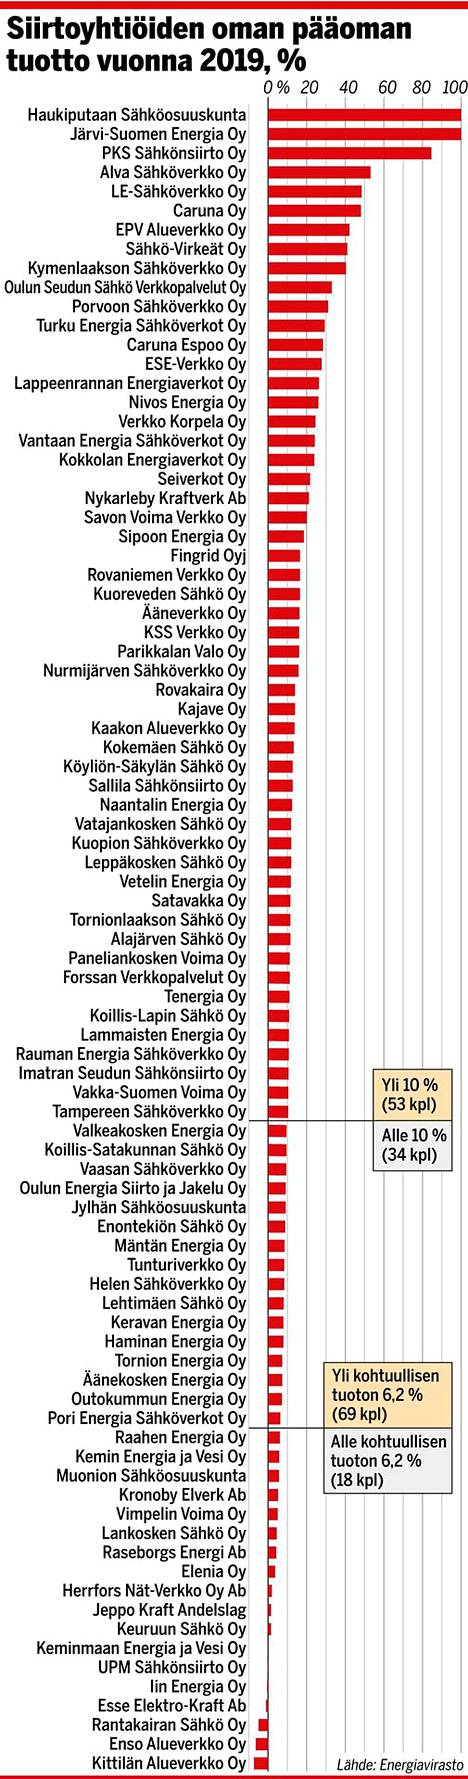 Uusi laskelma julki: näin sähkönsiirtoyhtiöt tienasivat ”oikeasti” -  Taloussanomat - Ilta-Sanomat